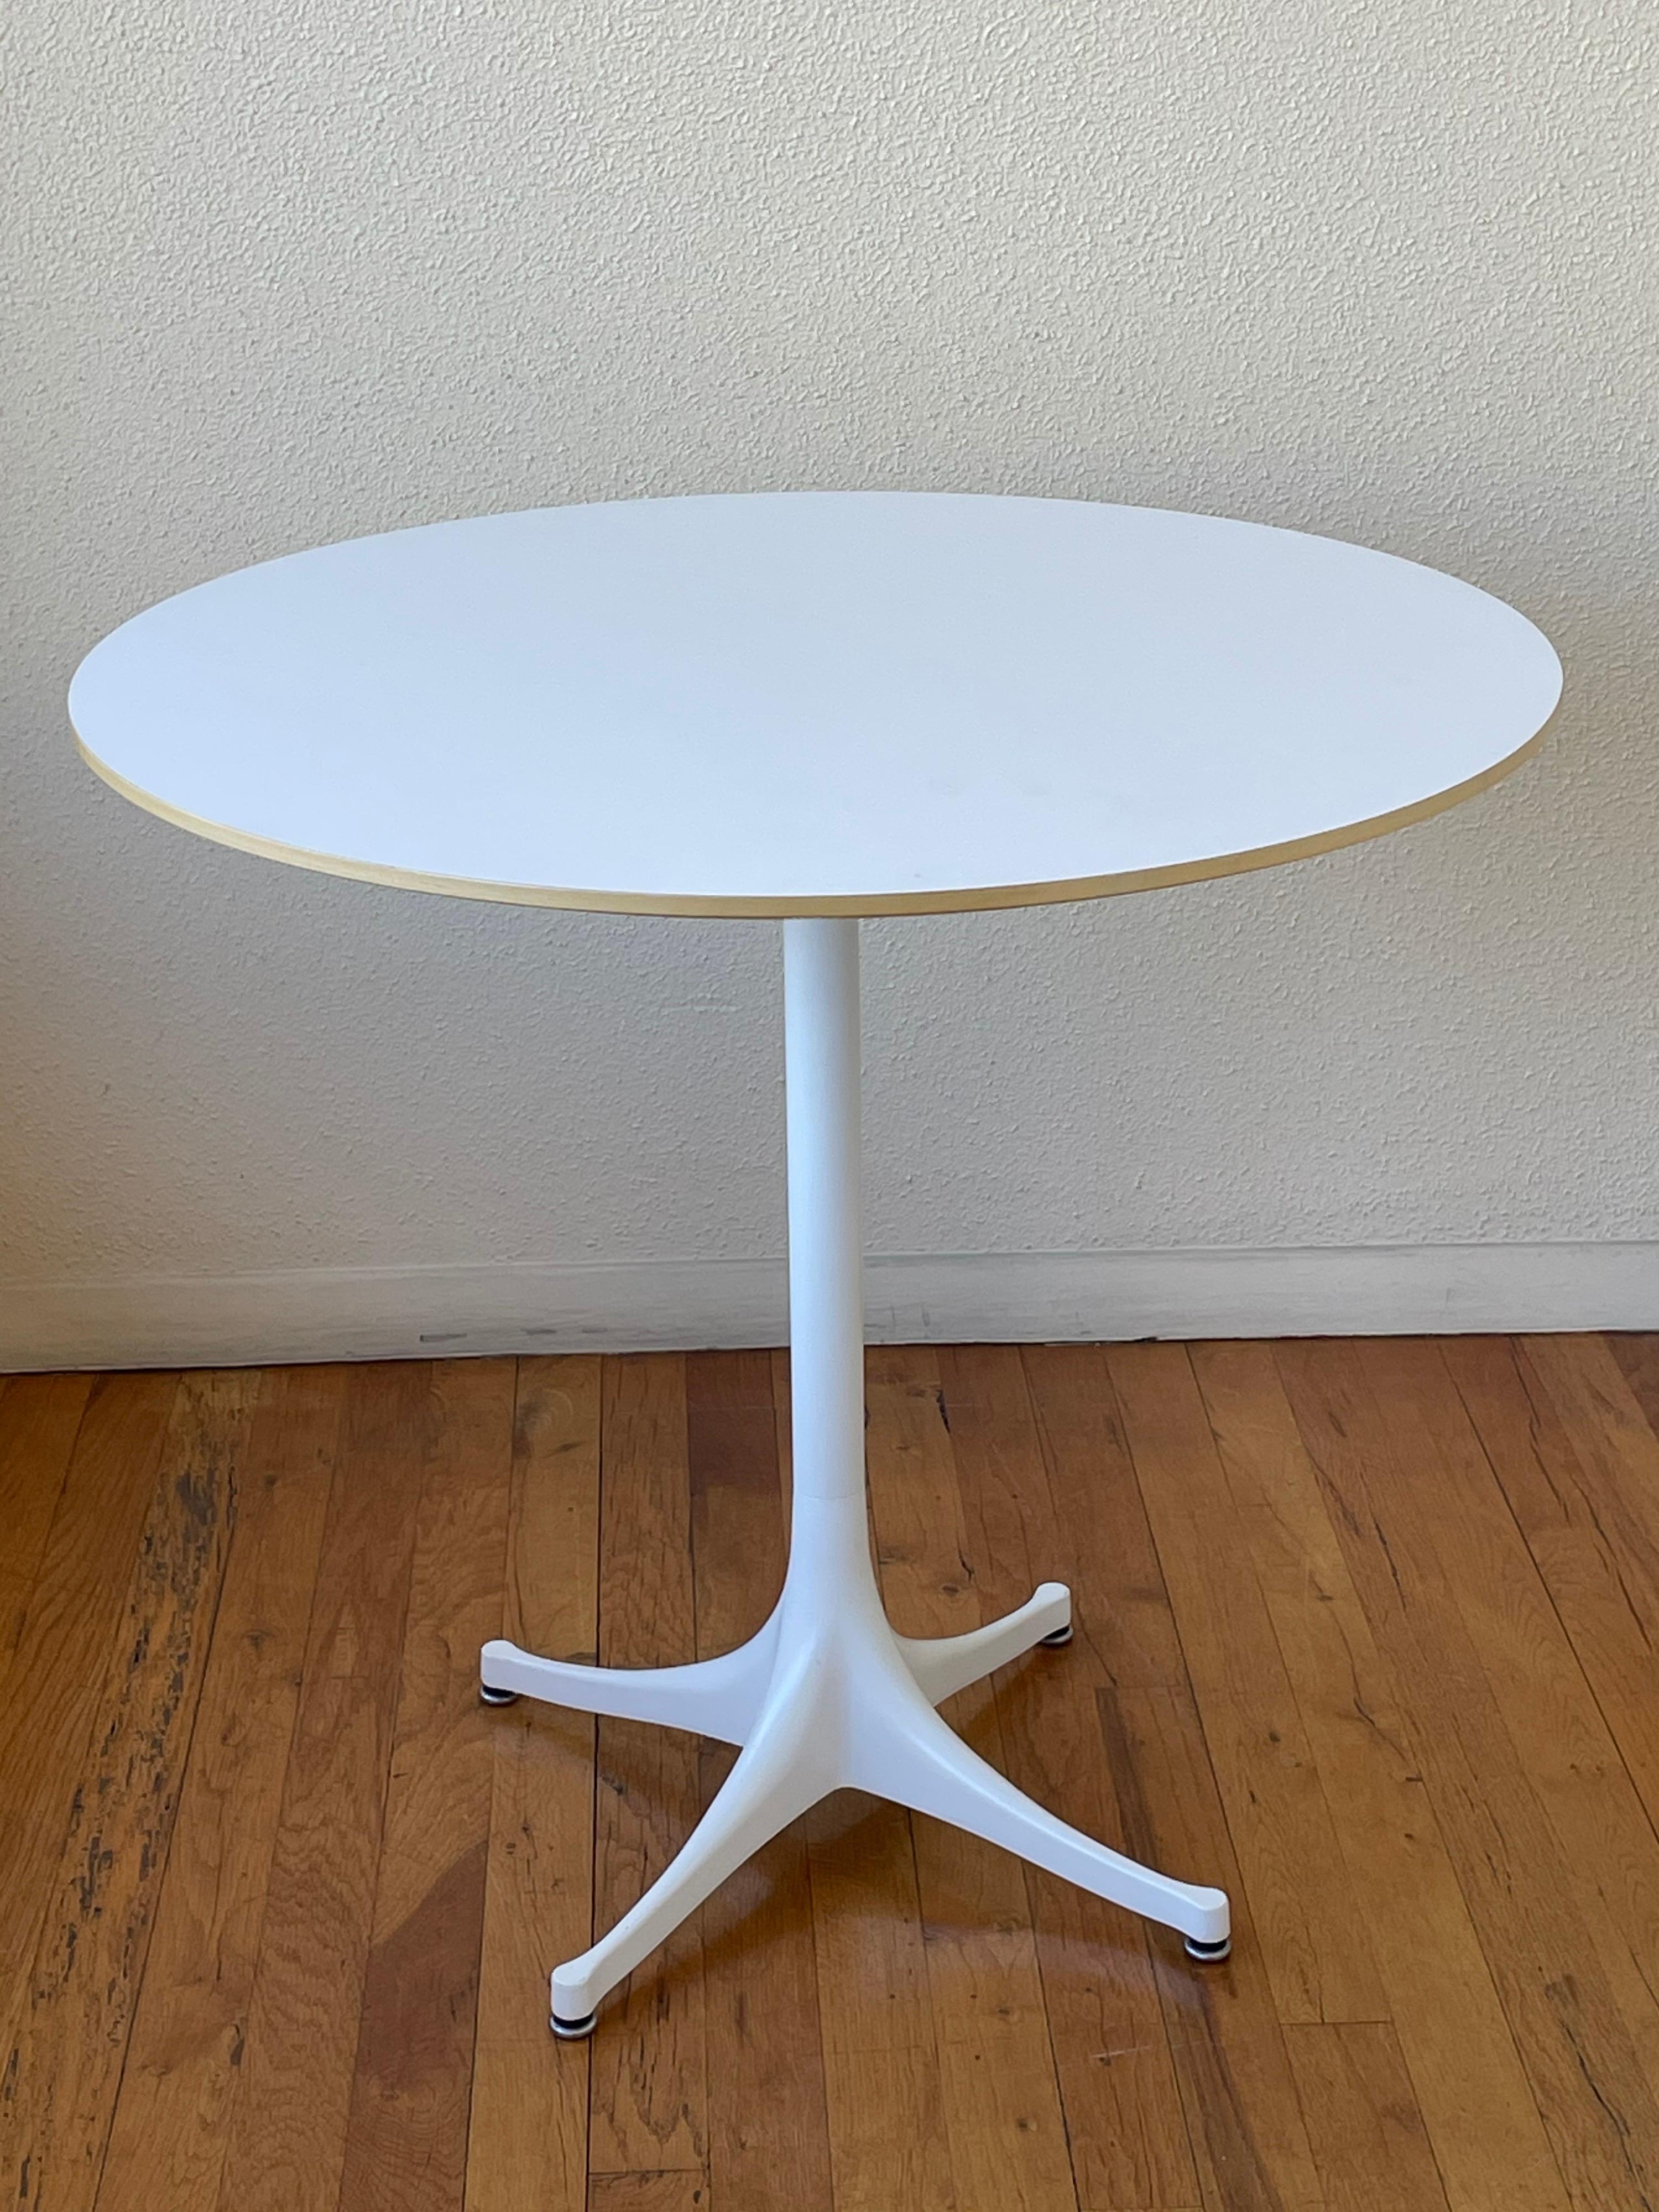 Mid-Century Modern George Nelson Pedestal Table Model 5254 for Herman Miller